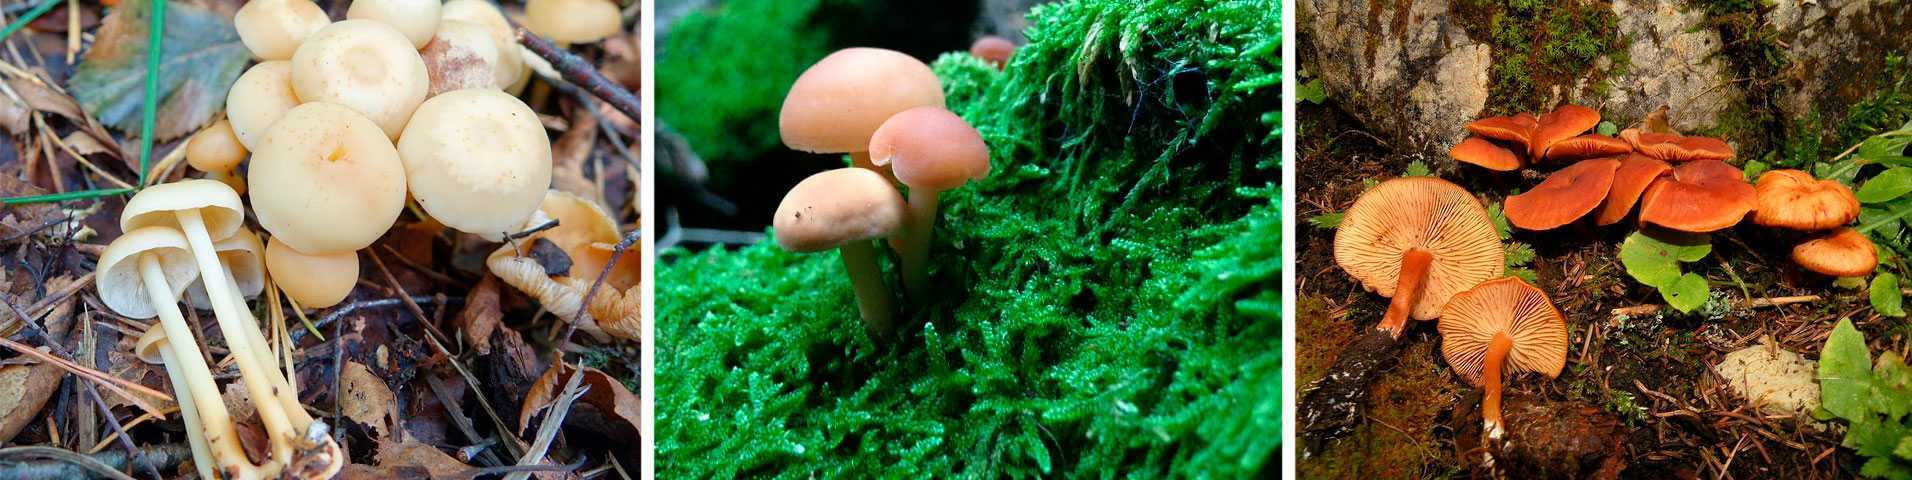 Гимнопус скороспелый (gymnopus ocior) –  грибы сибири